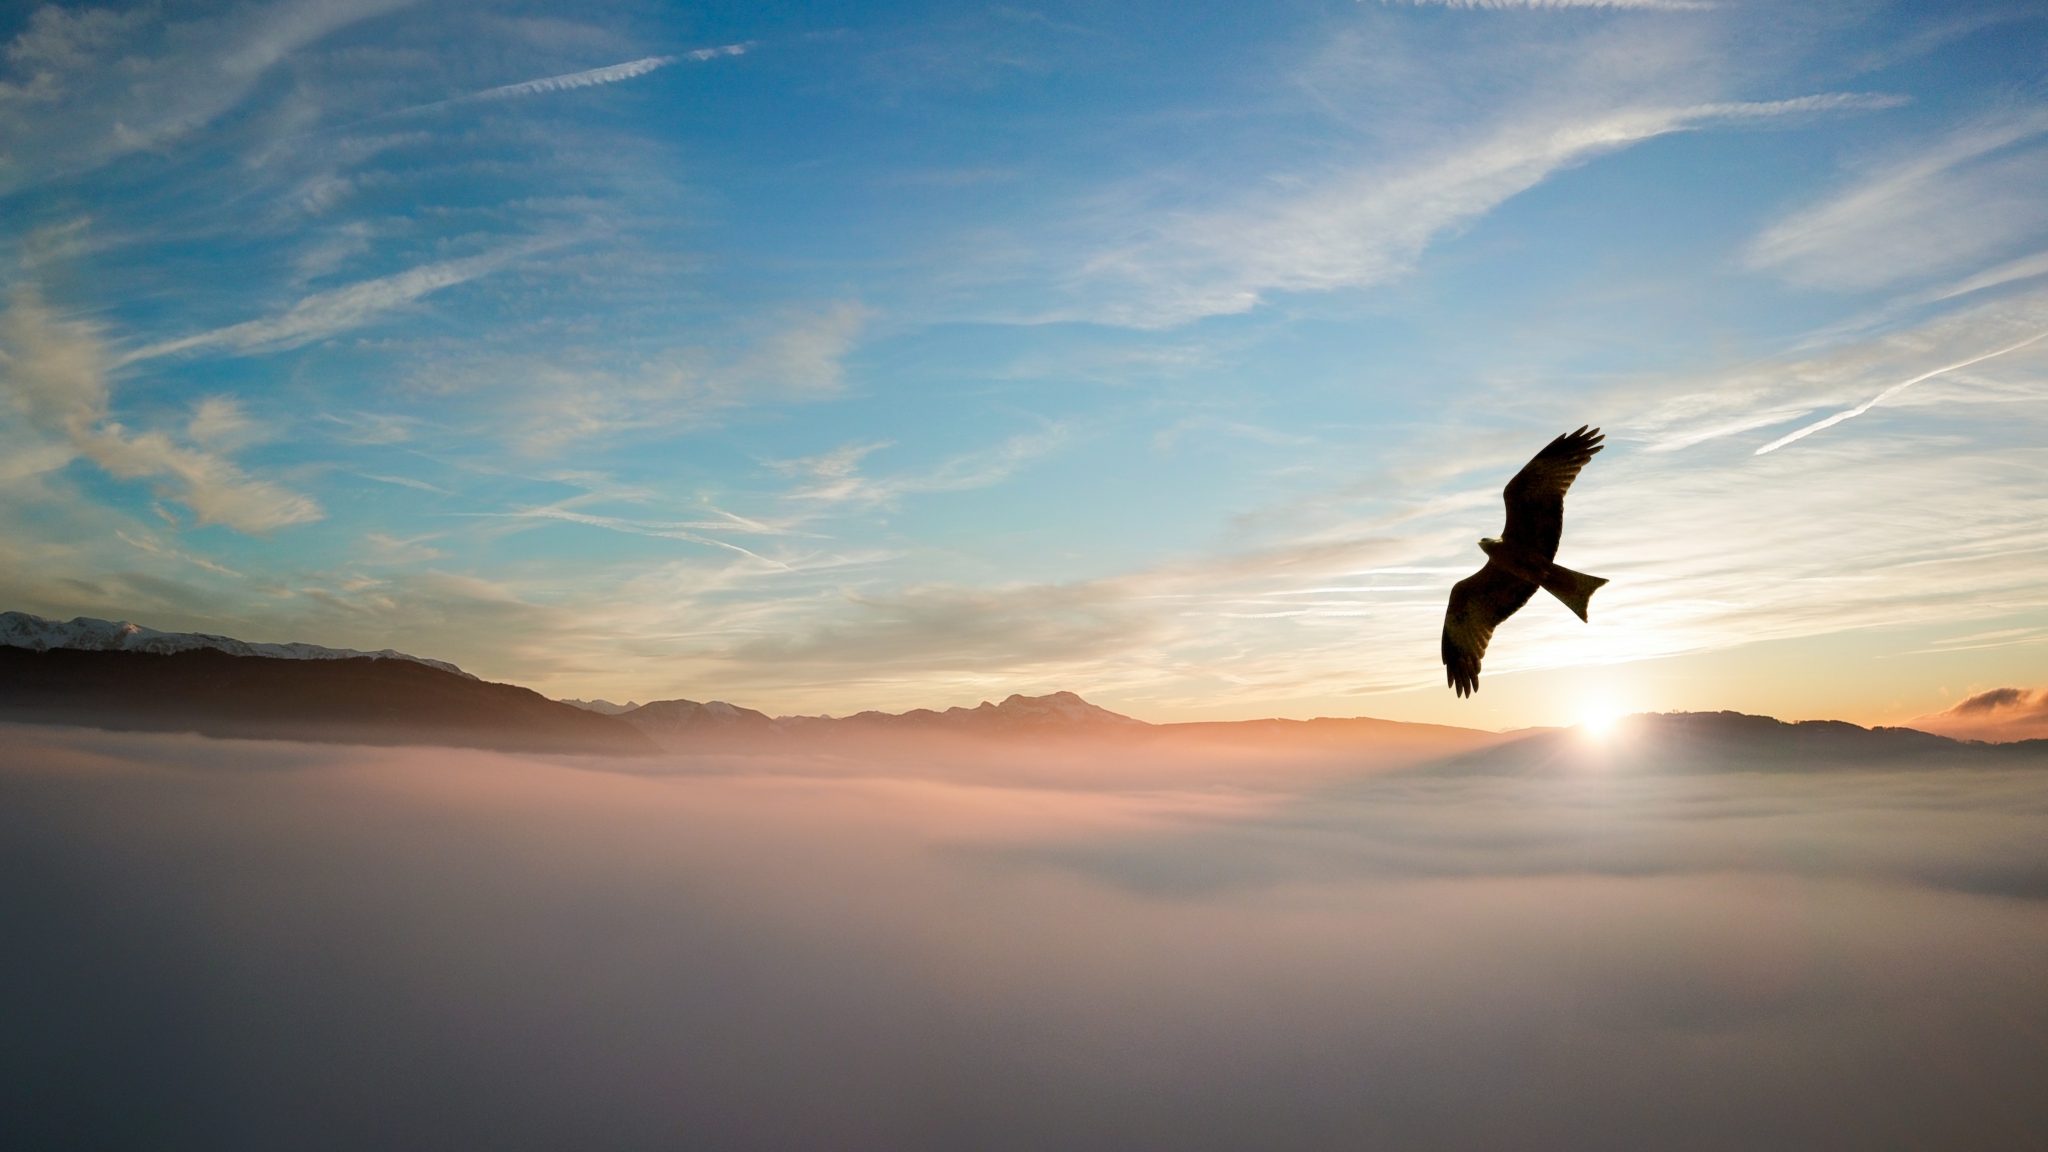 Preparado para voar - águia voando sobre as montanhas através das nuvens com o pôr-do-sol ao fundo